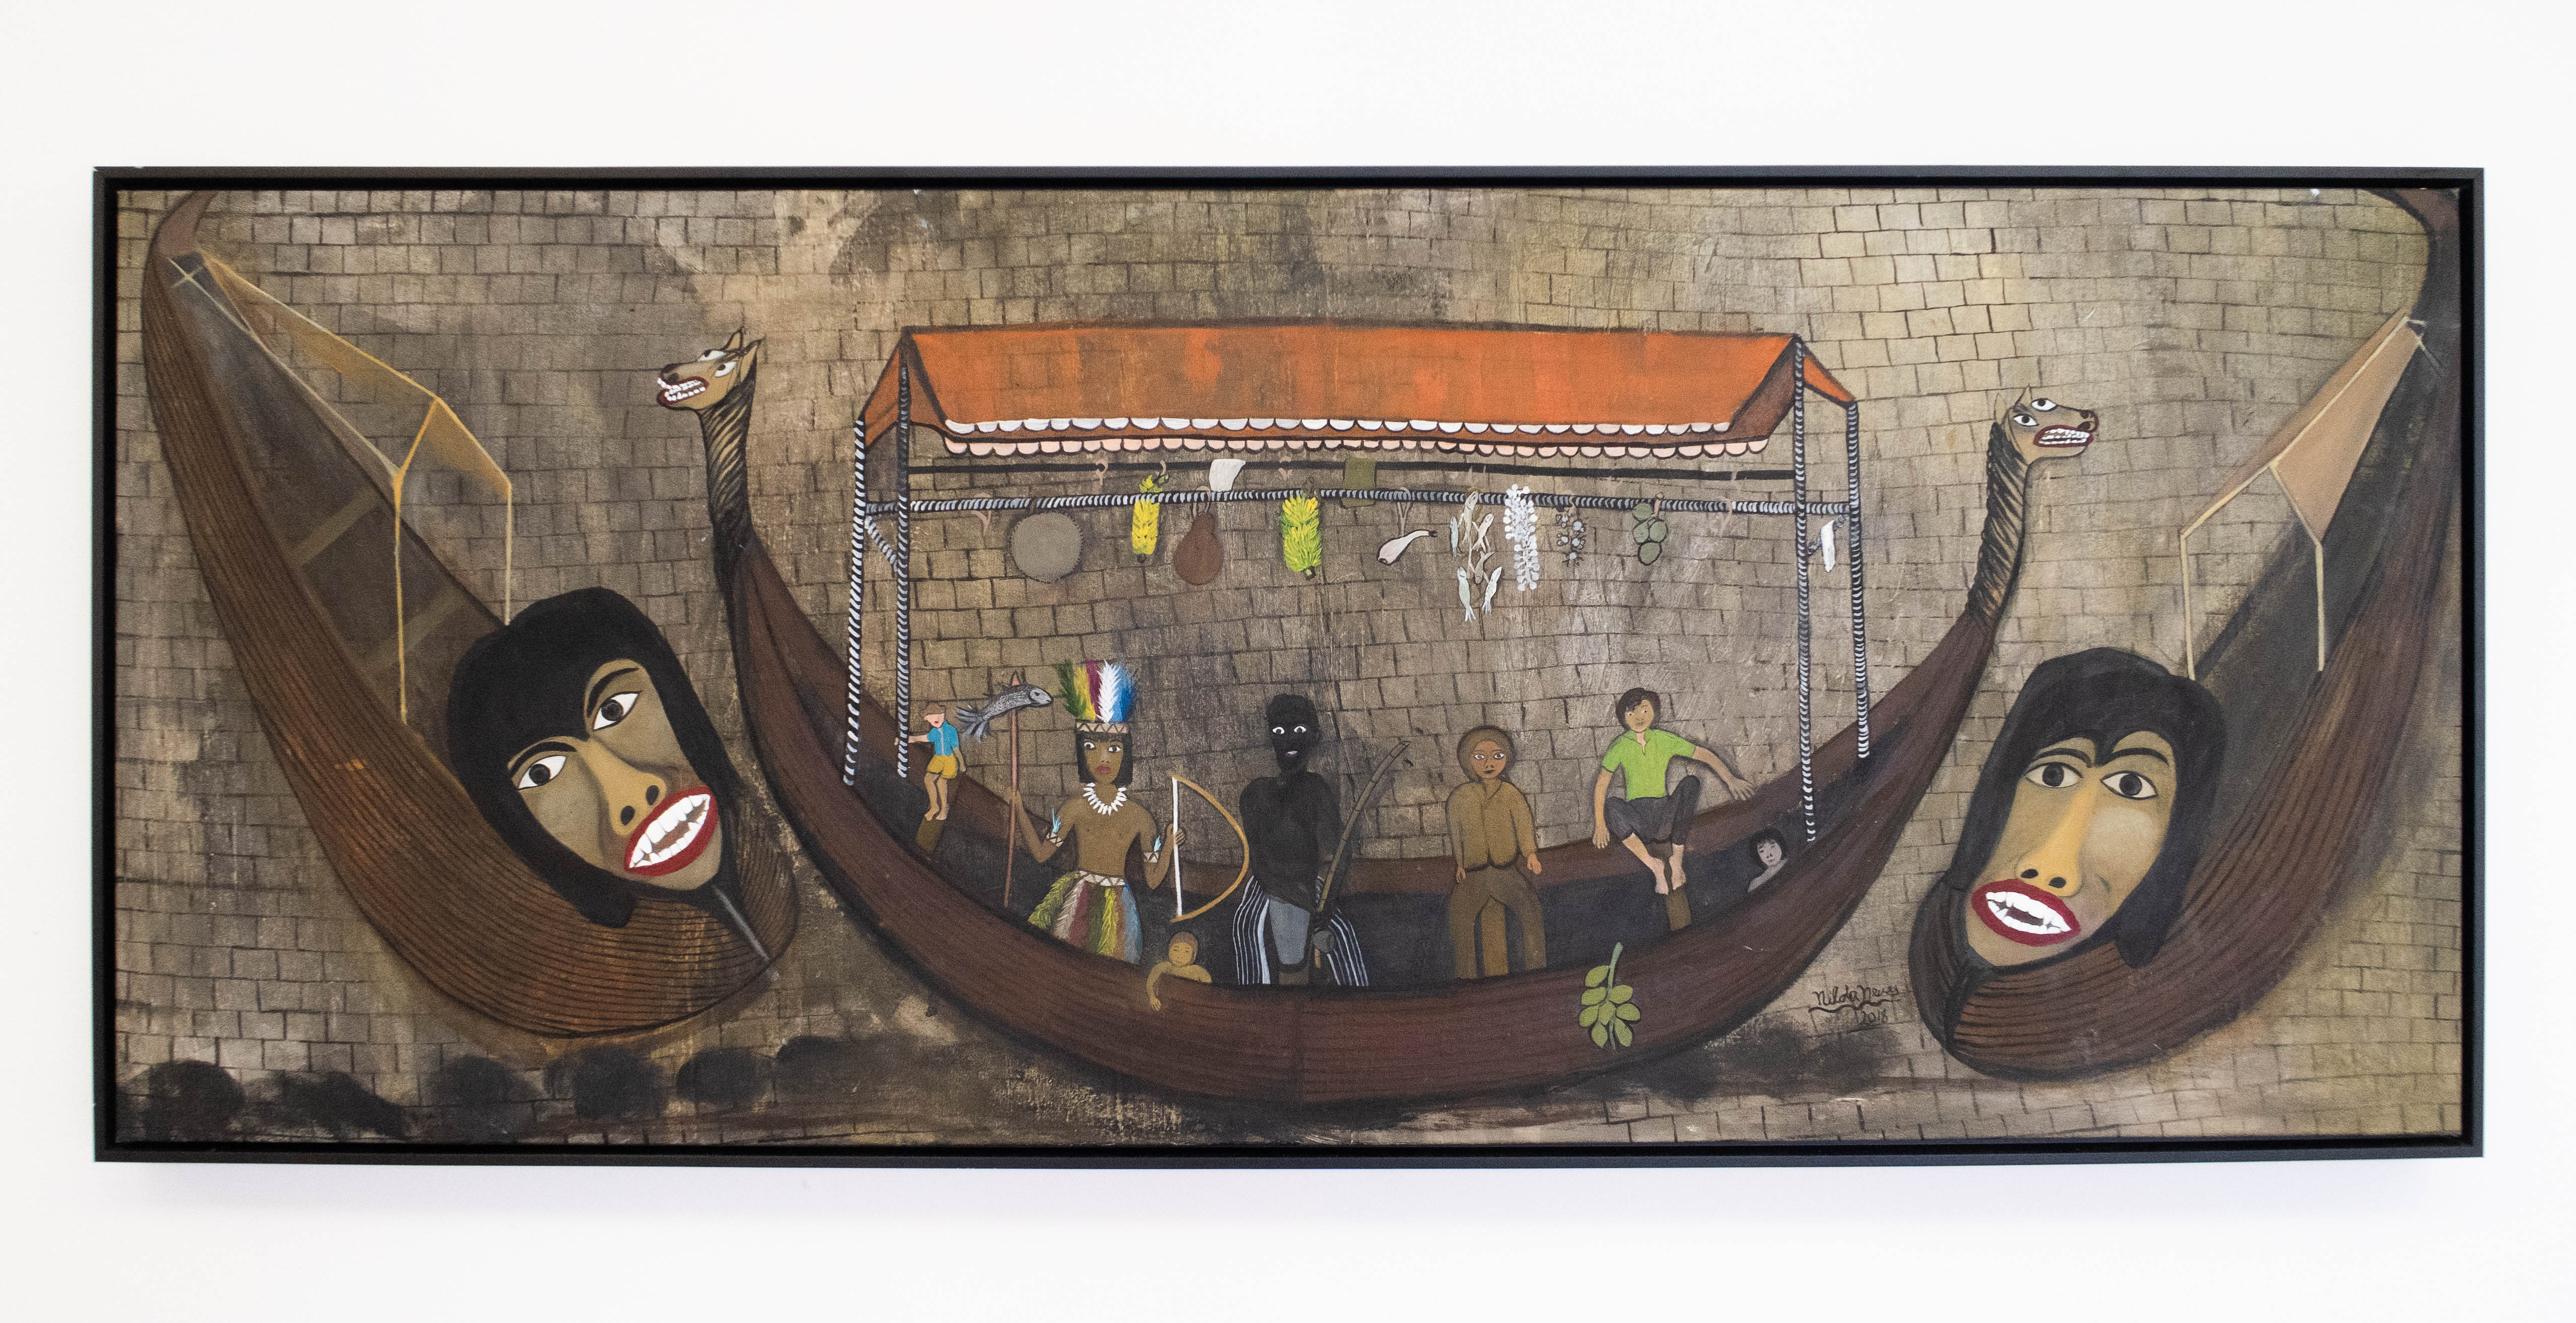 Nilda Neves, Carrancas do descobrimento, Acrílica sobre tela, 62 x 149 cm, 2019